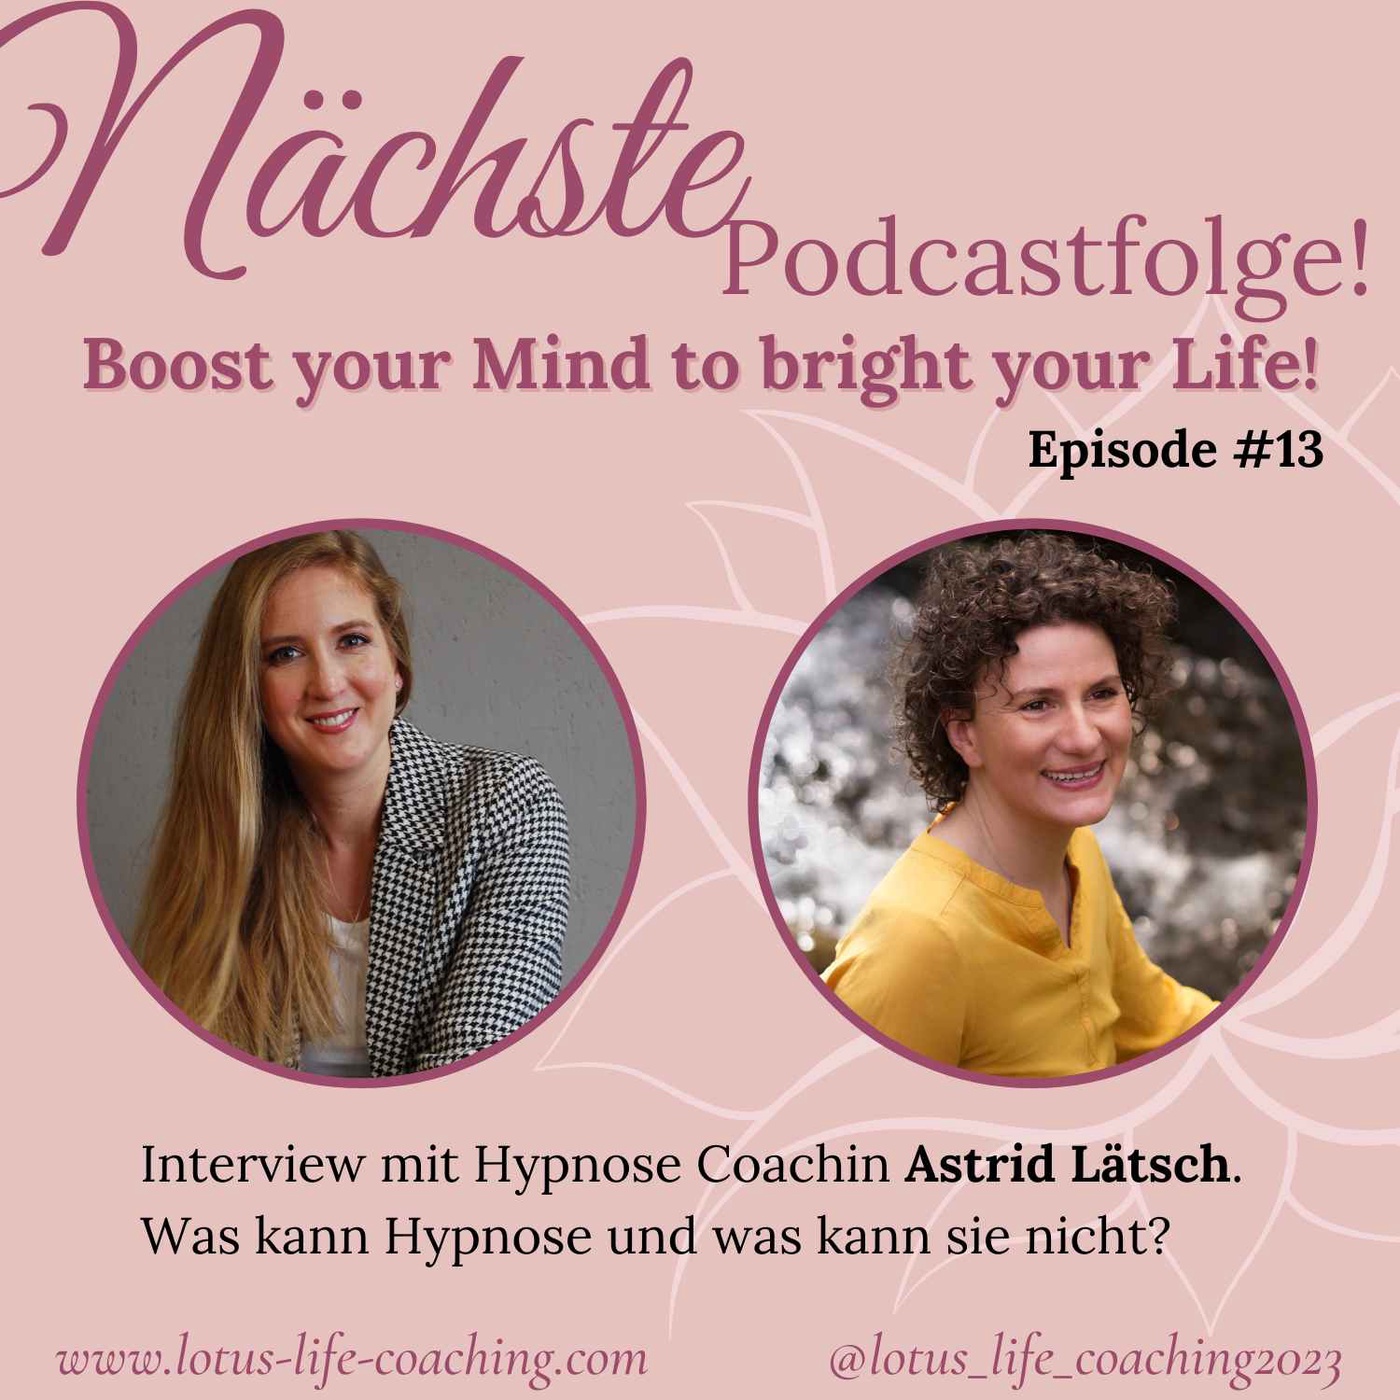 Episode #13 - Interview mit Hypnose Coachin Astrid Lätsch. Was kann Hypnose und was kann sie nicht?